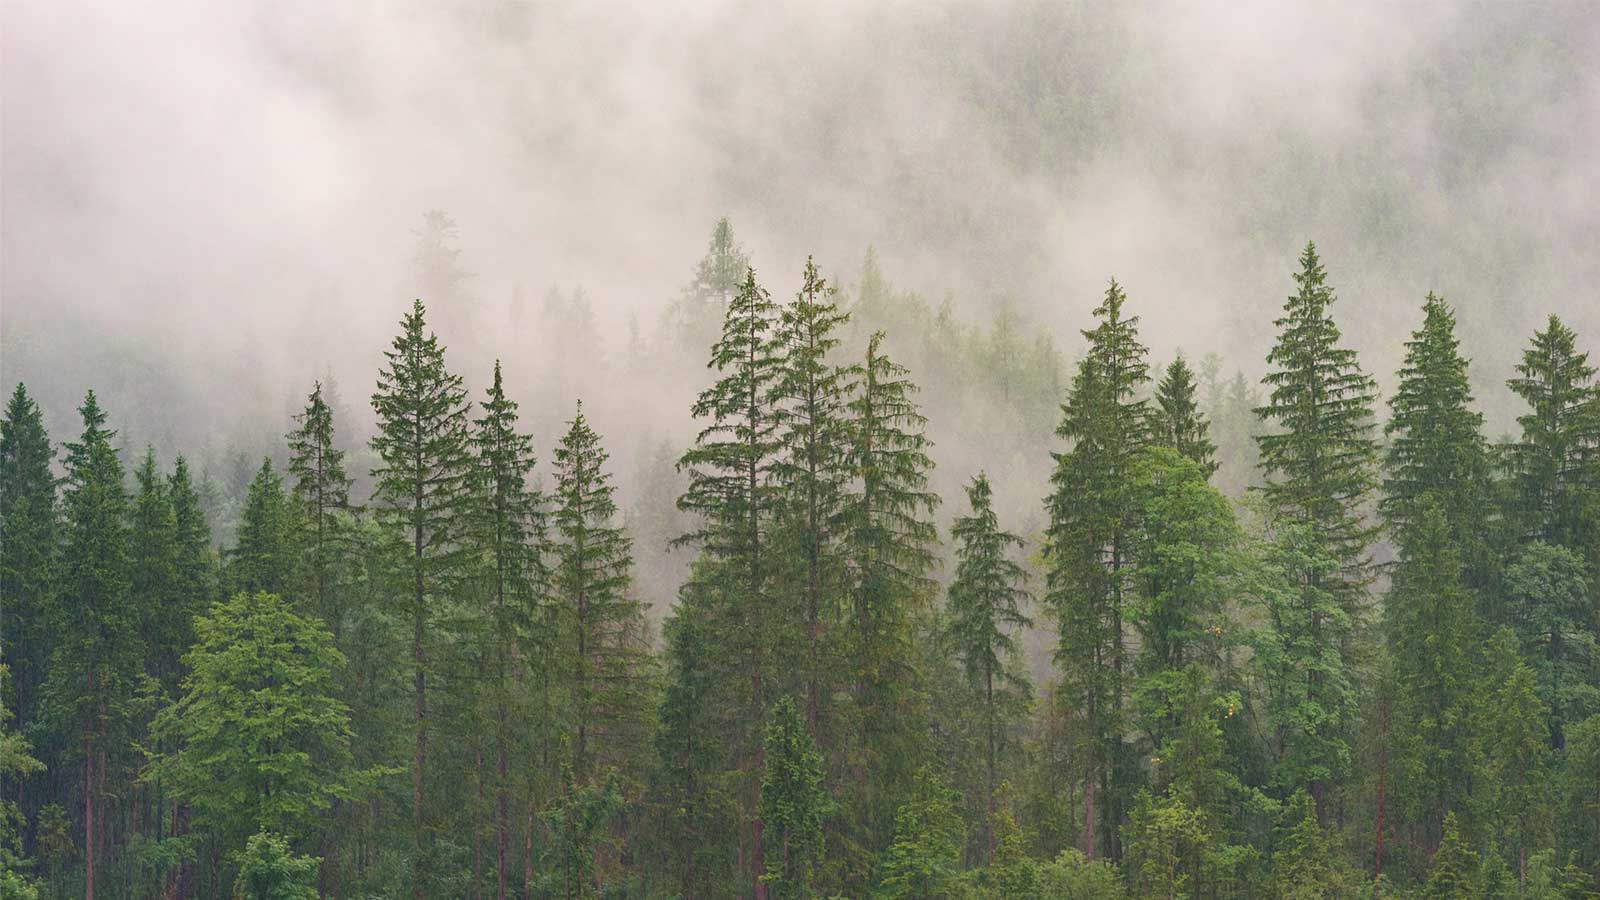 和紙と森林環境の循環